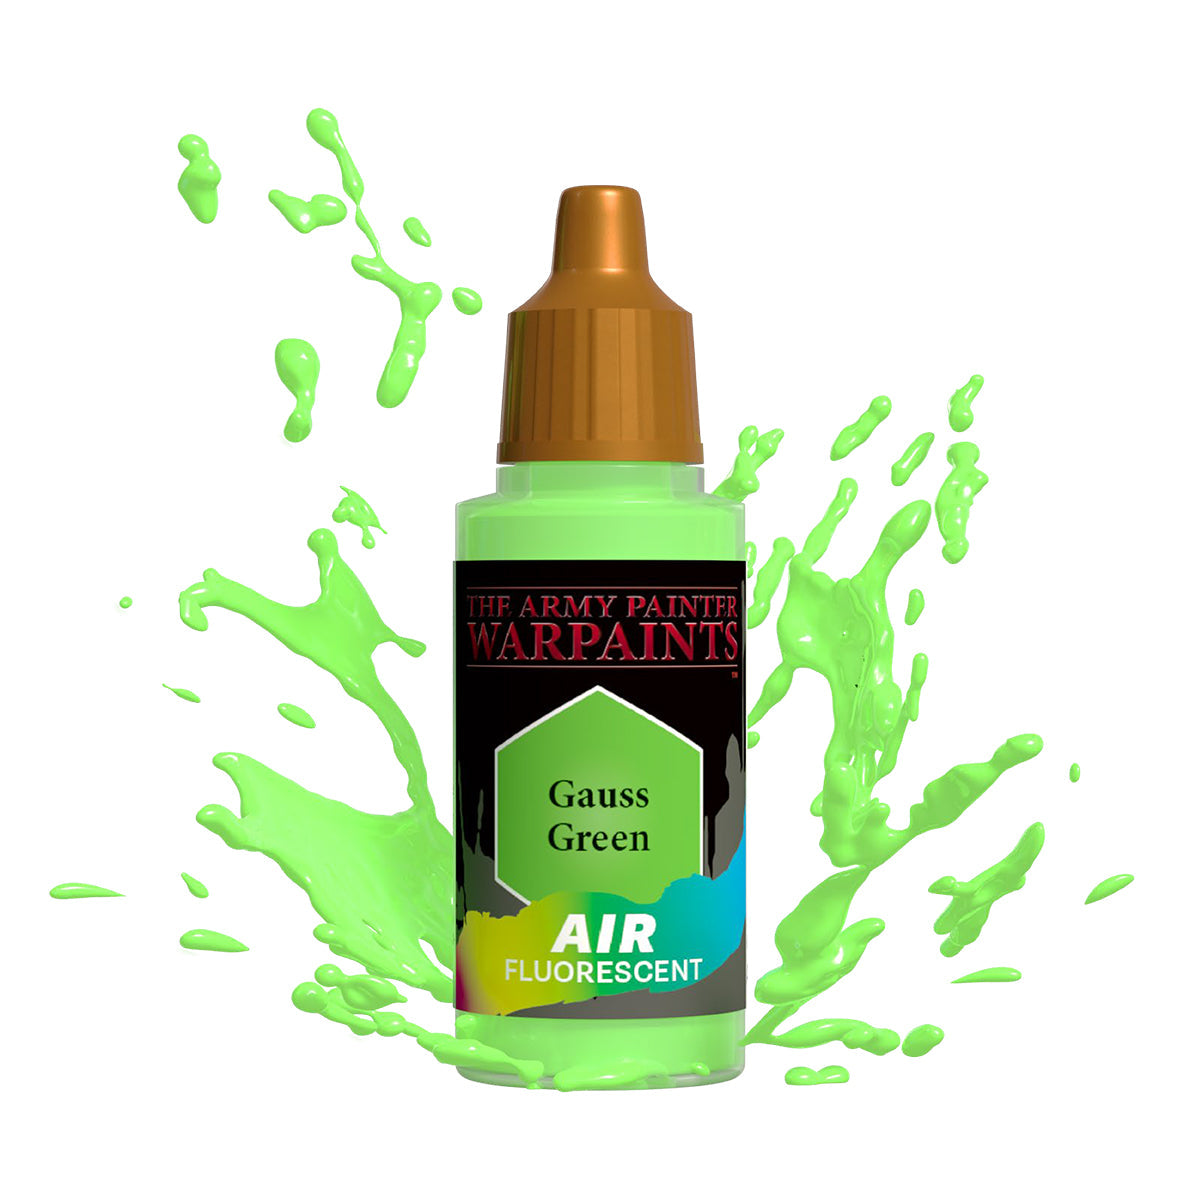 Warpaints Air Fluorescent: Gauss Green